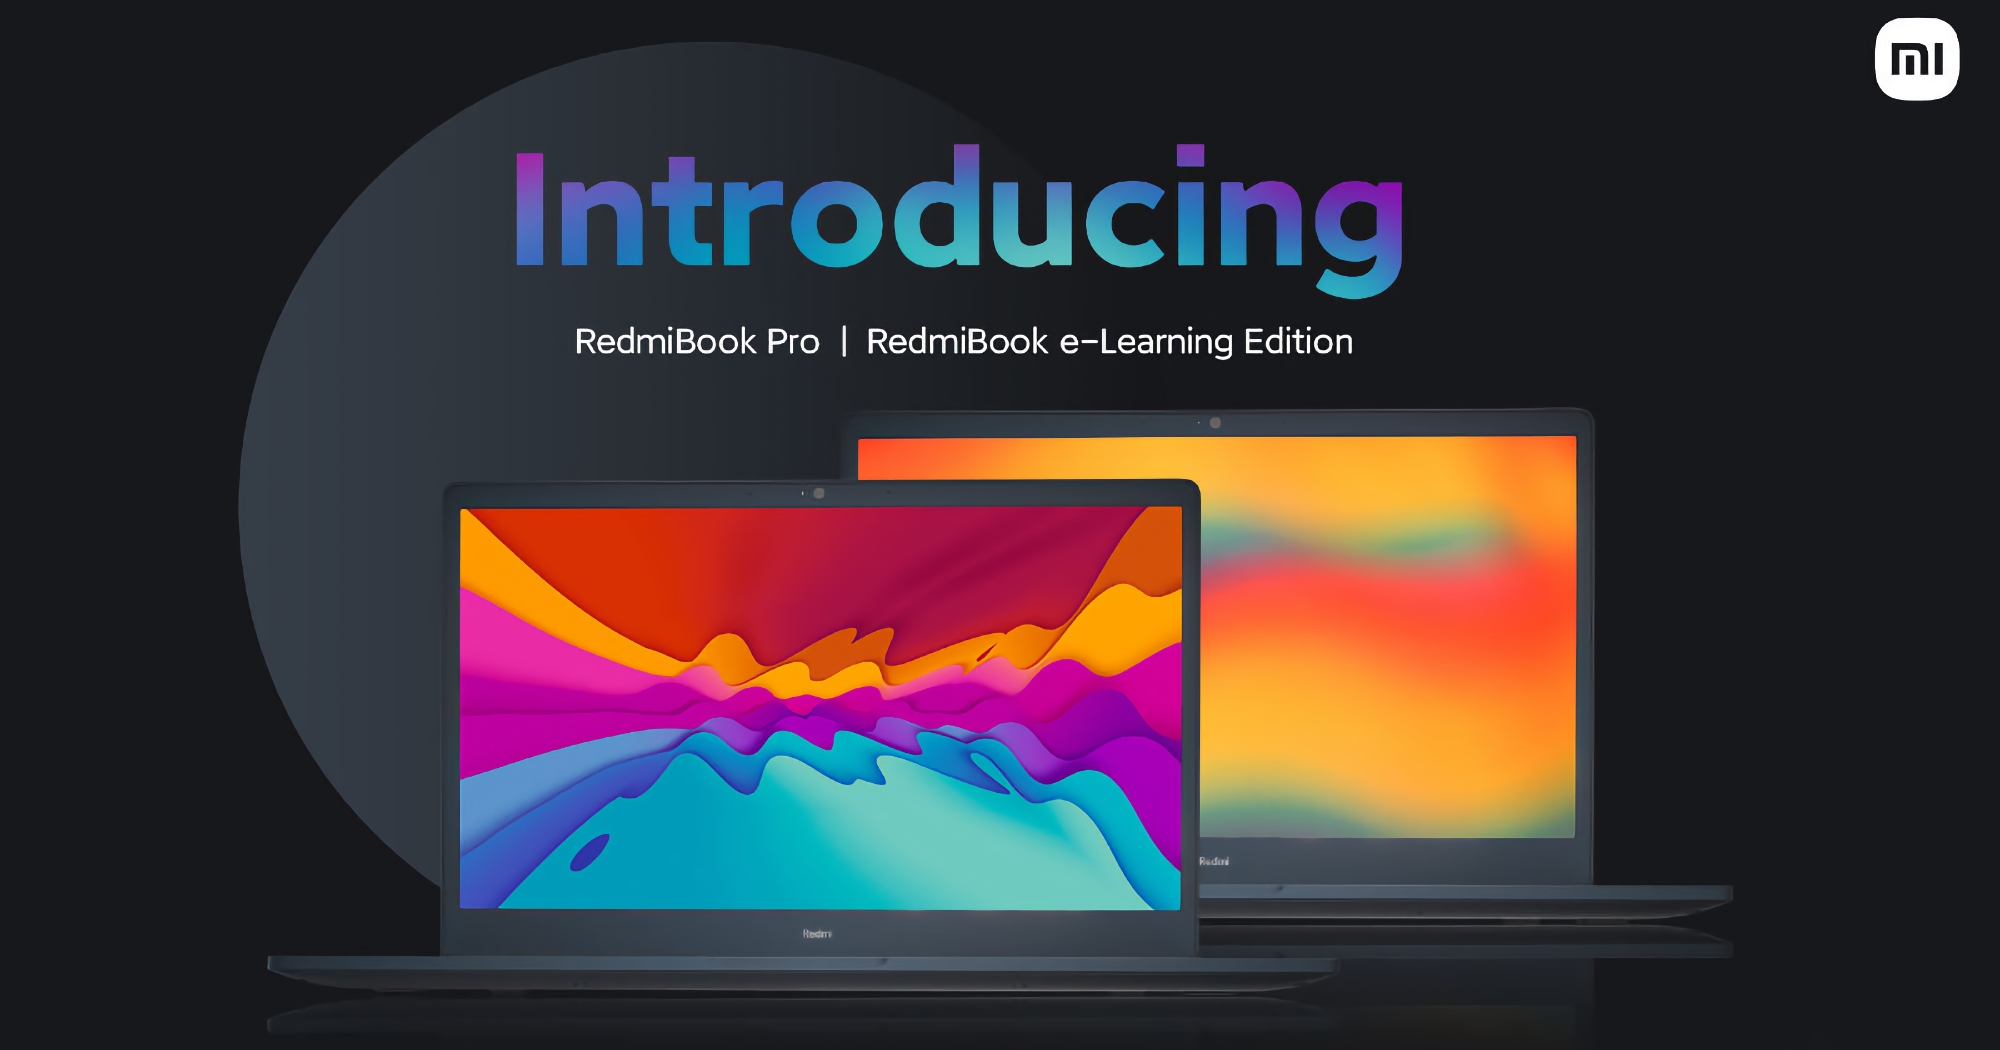 Xiaomi stellt RedmiBook Pro und RedmiBook E-Learning vor: Laptops mit 15,6"-Bildschirmen, Intel Core-Chips der 11. Generation und einem Preis von 531 $